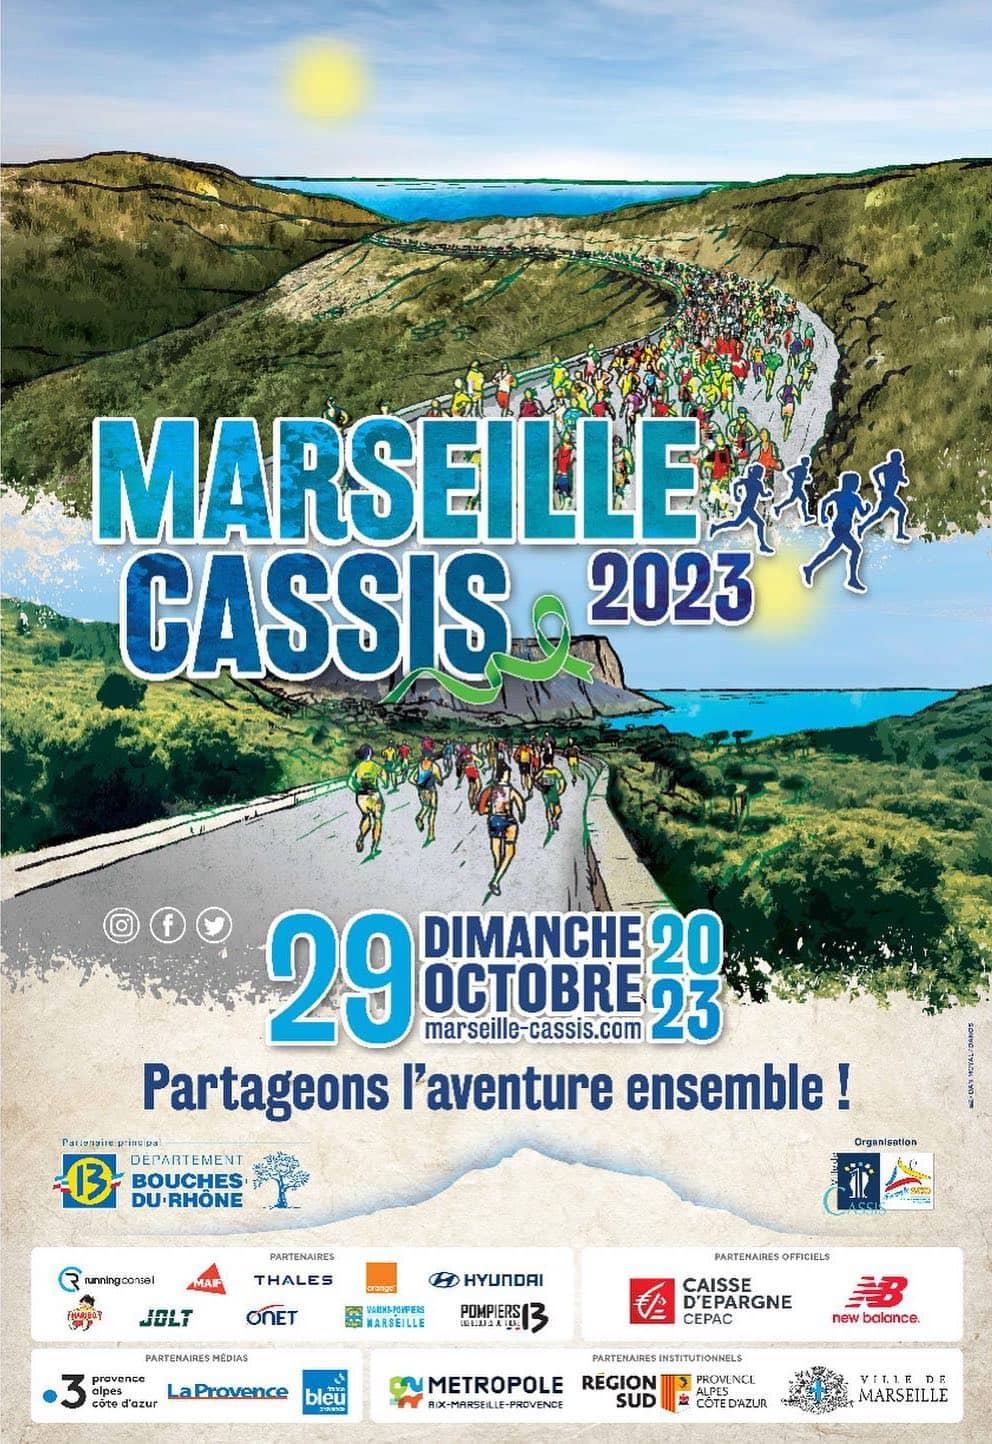 Marseille-Cassis 2023 Affiche